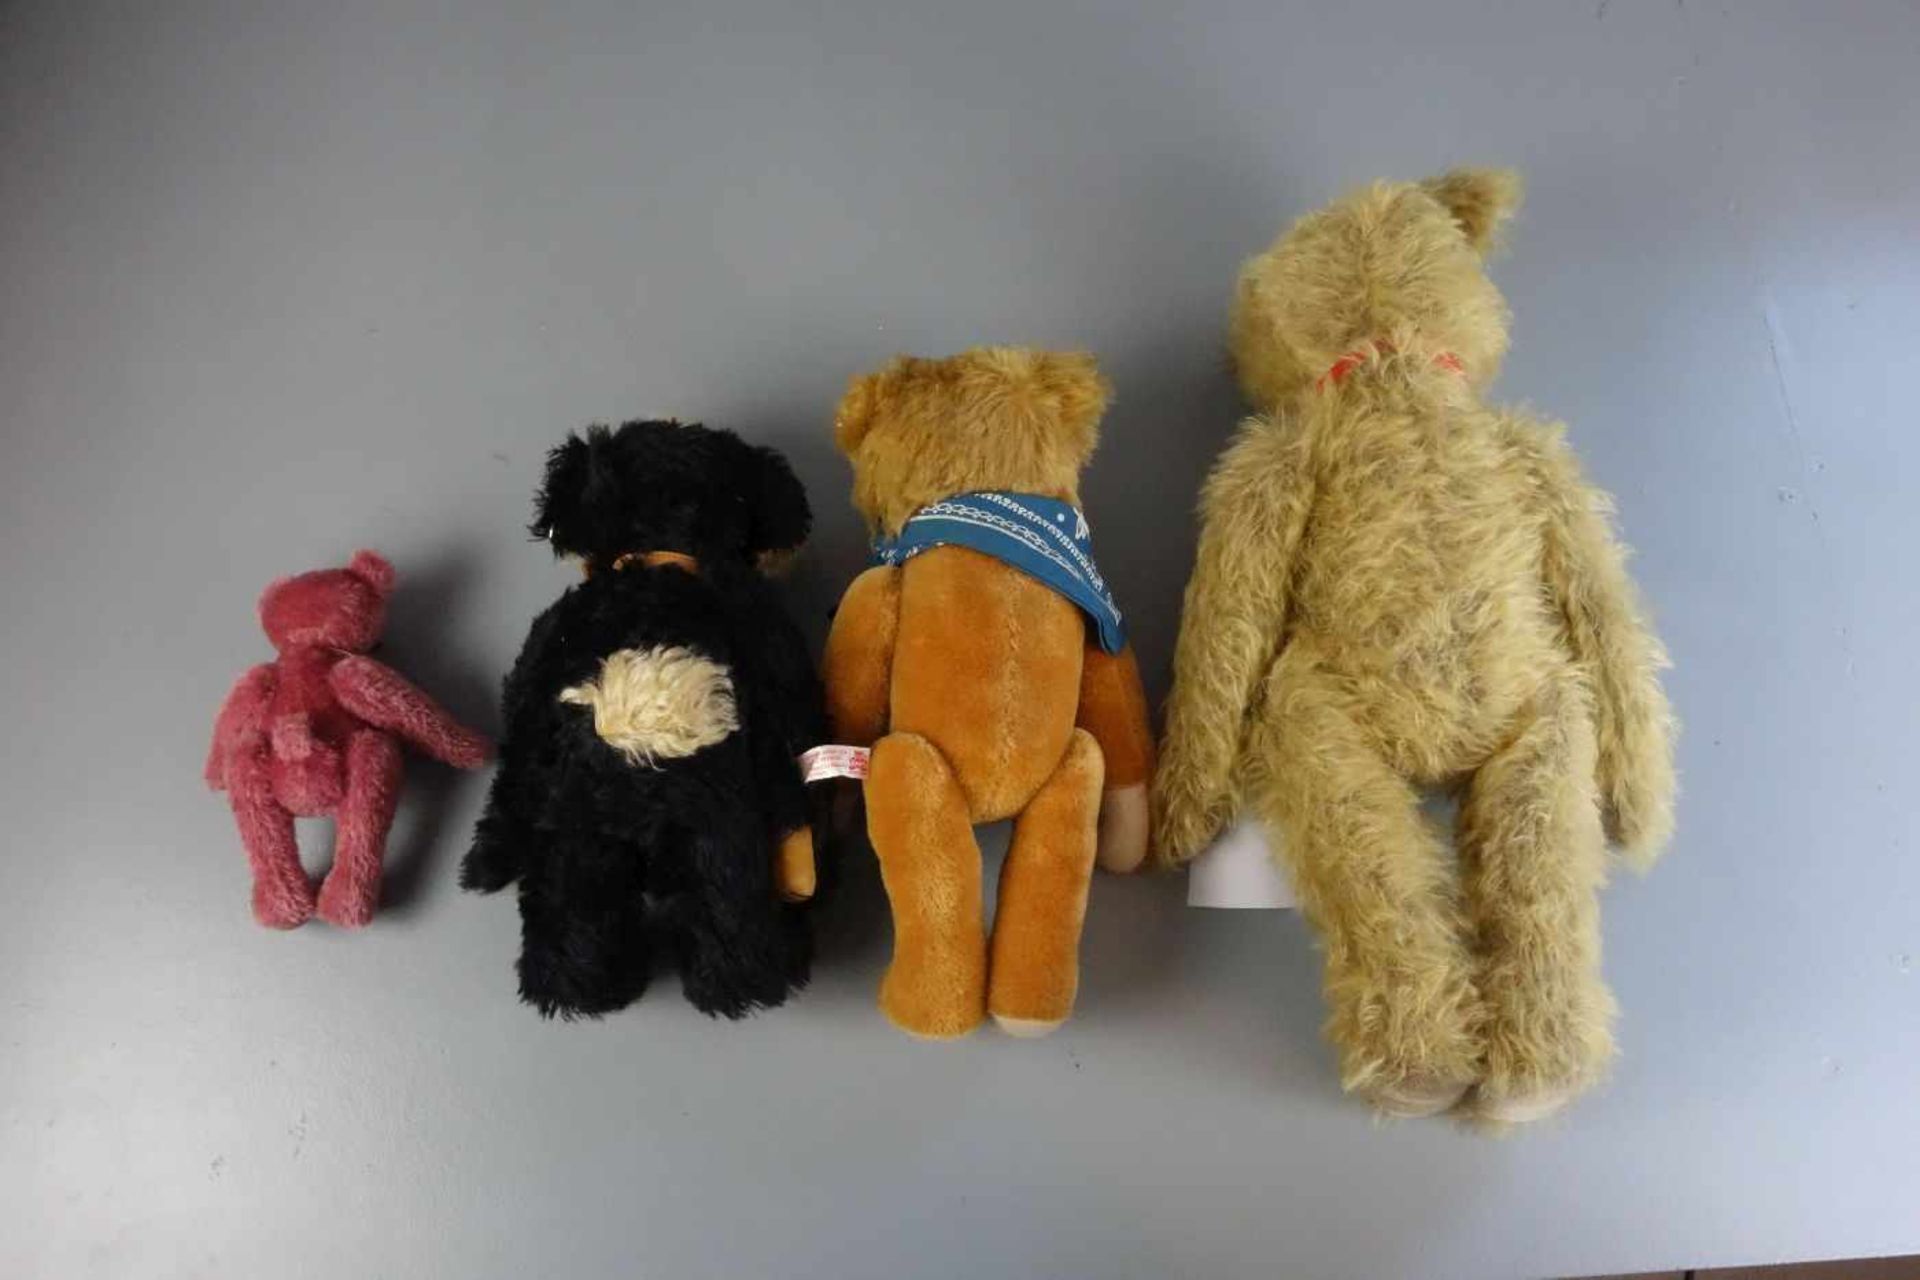 KONVOLUT PLÜSCHTIERE / KÜNSTLER-TEDDYBÄREN - 4 STÜCK / four teddy bears. Unterschiedliche Größen und - Bild 2 aus 4